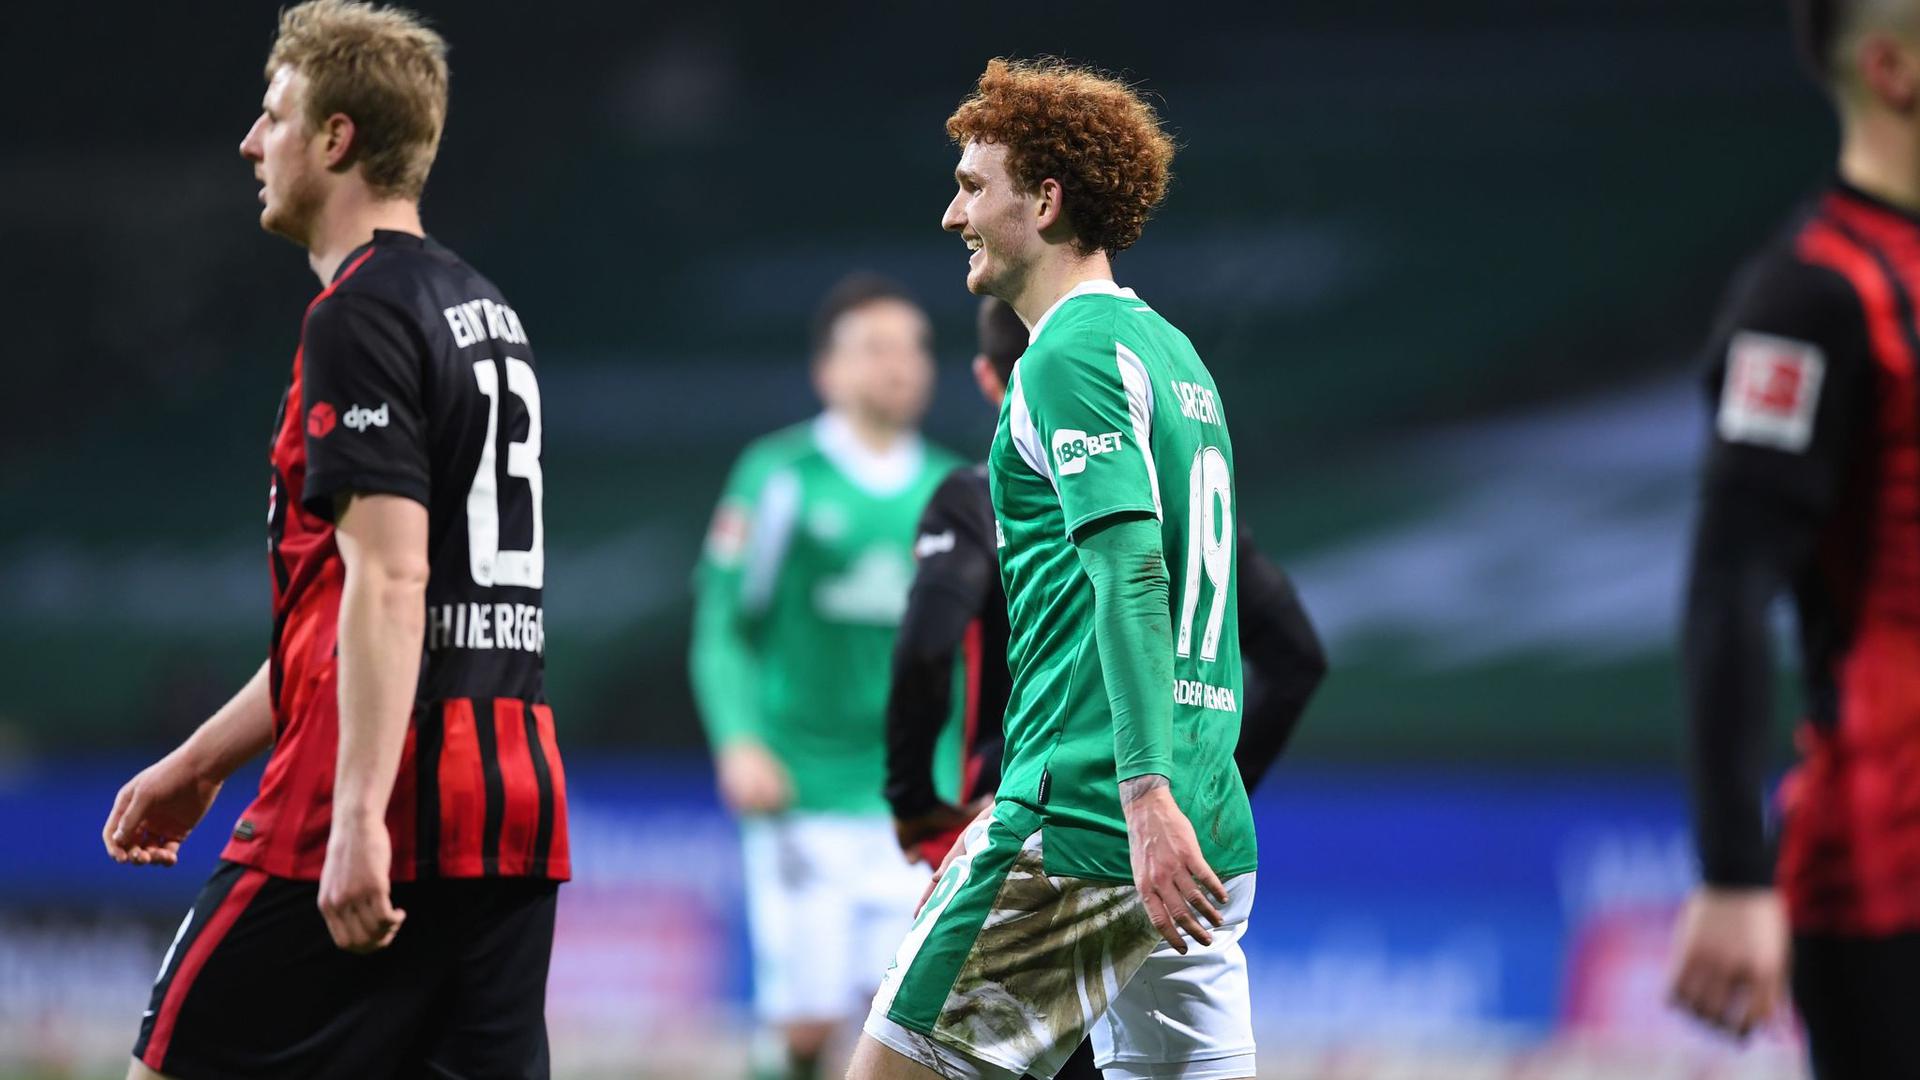 Nach seinem Treffer zeigt Joshua Sargent (M) von Werder Bremen ein breites Grinsen.